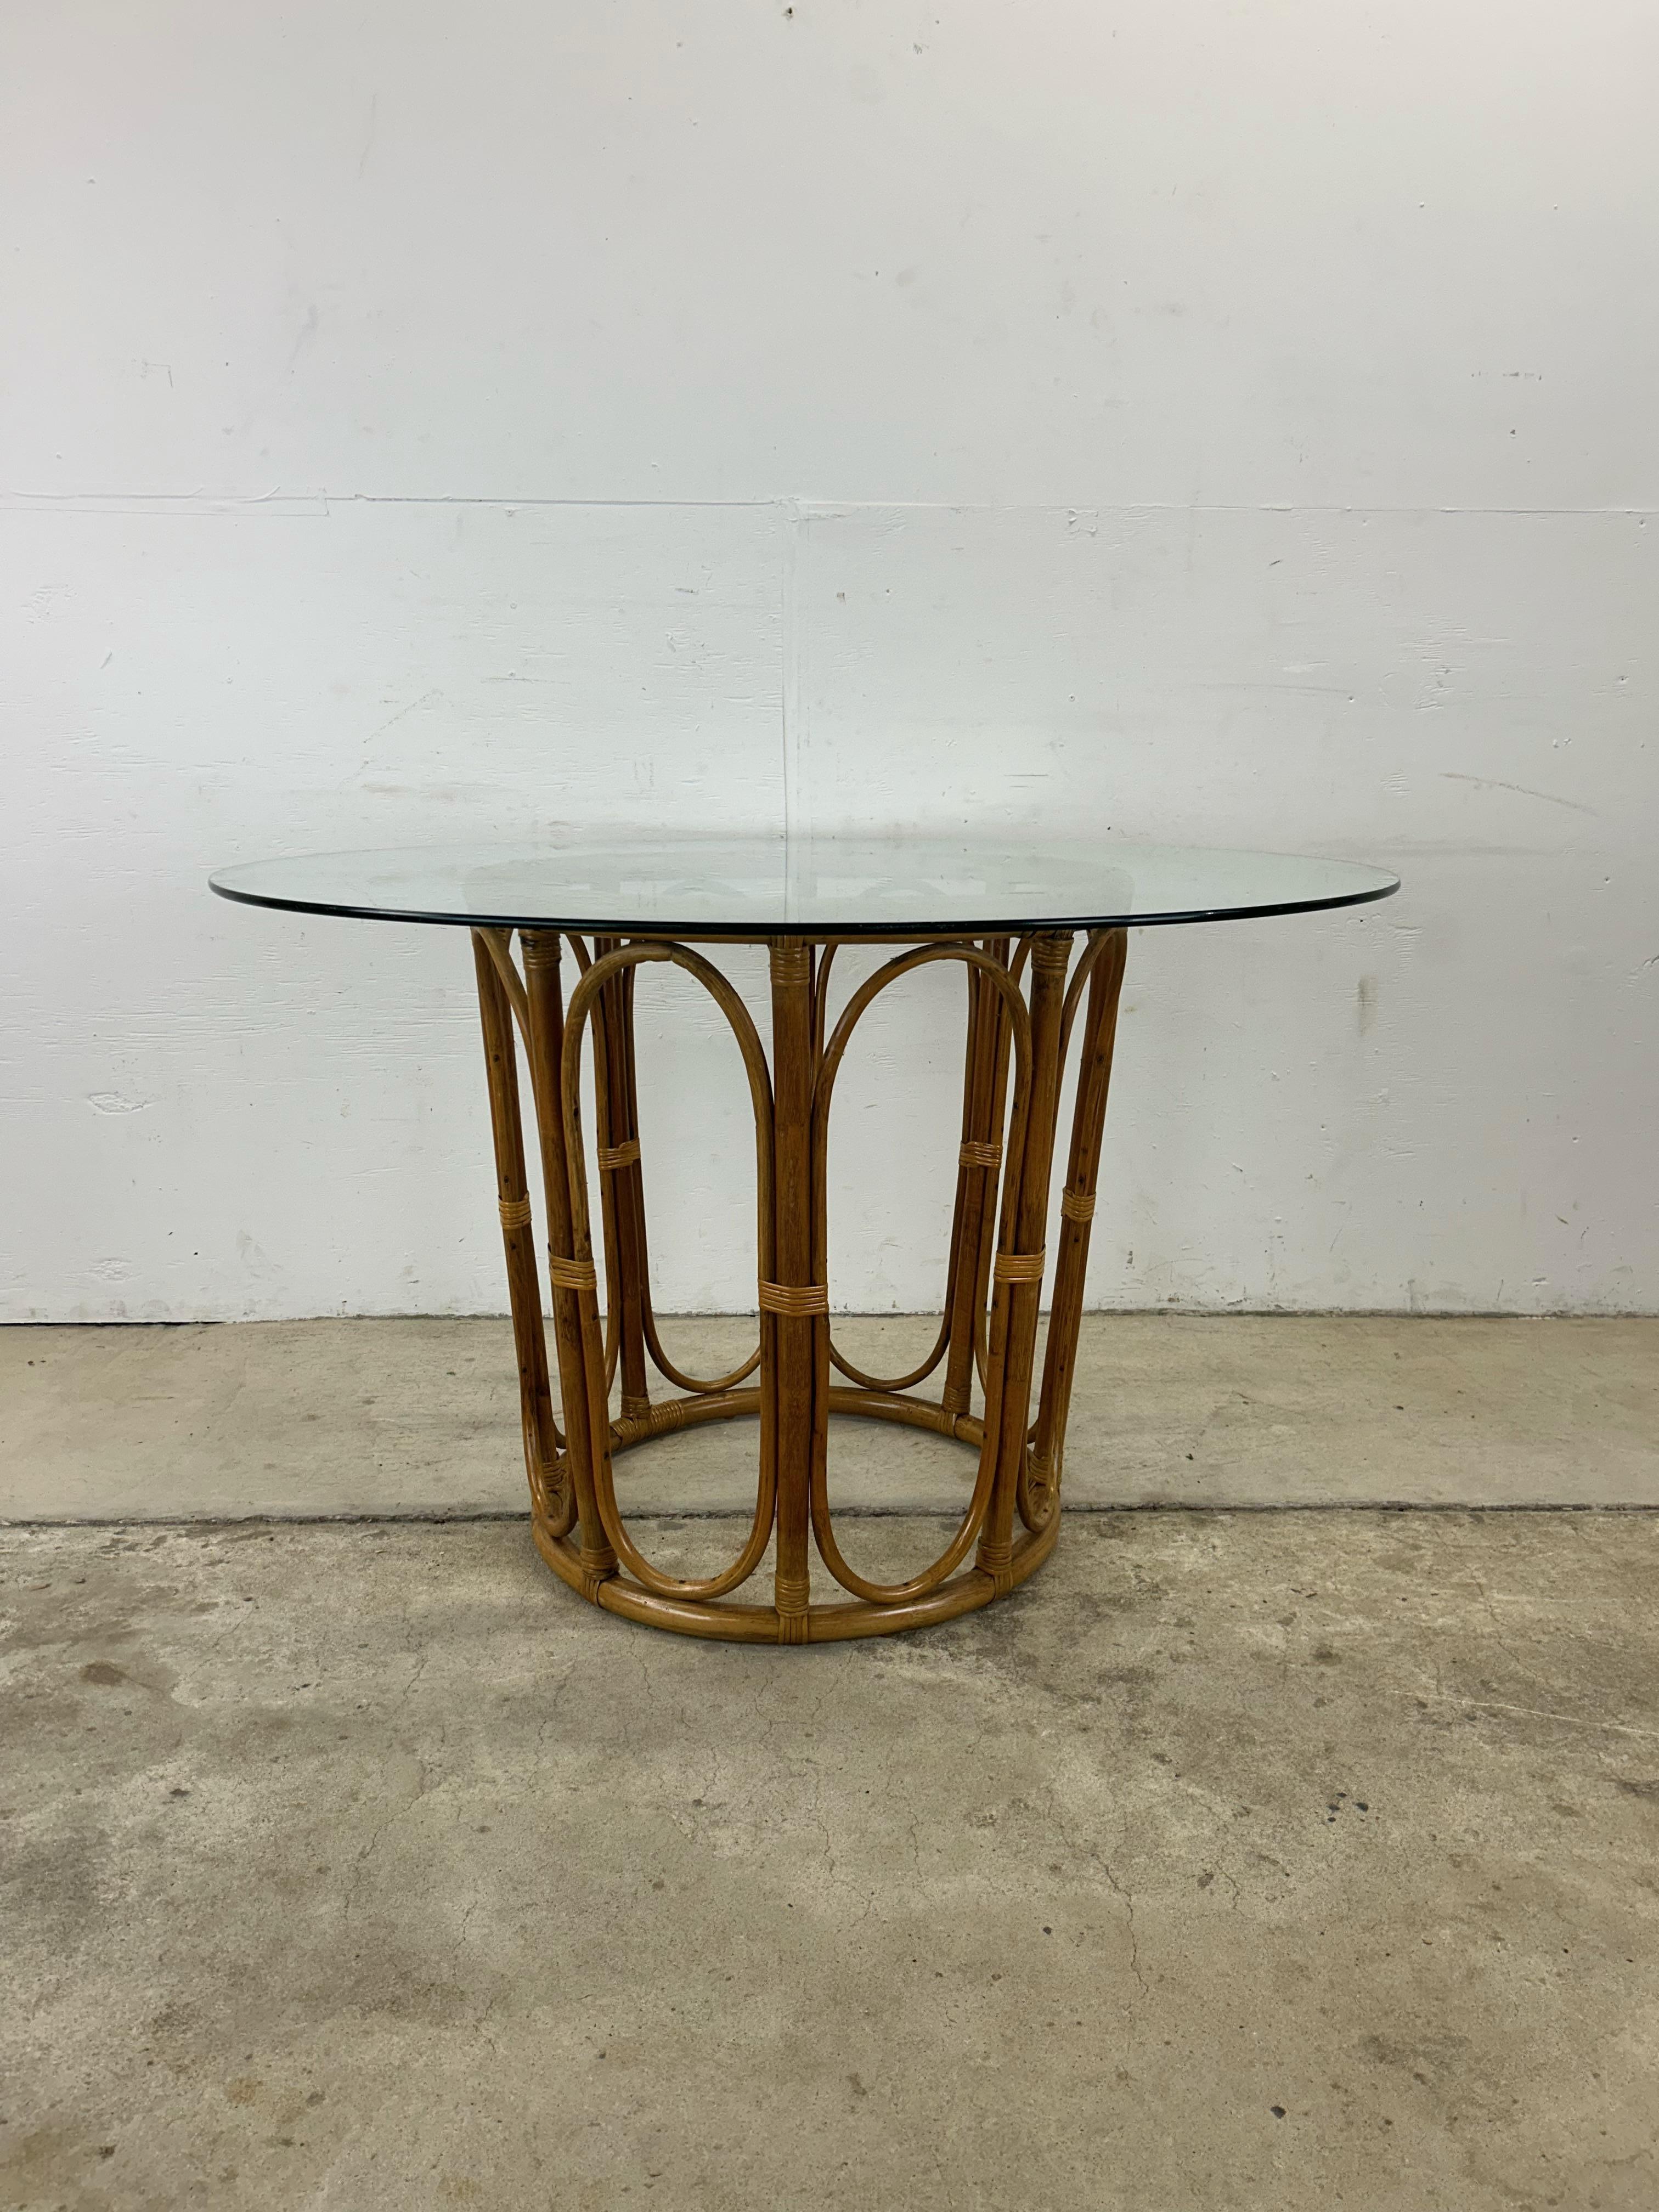 Cette table de salle à manger vintage présente un plateau rond en verre et une base à piédestal en rotin avec une finition d'origine.

Des chaises assorties et d'autres pièces en rotin similaires sont disponibles séparément. 

Dimensions : 48.25w